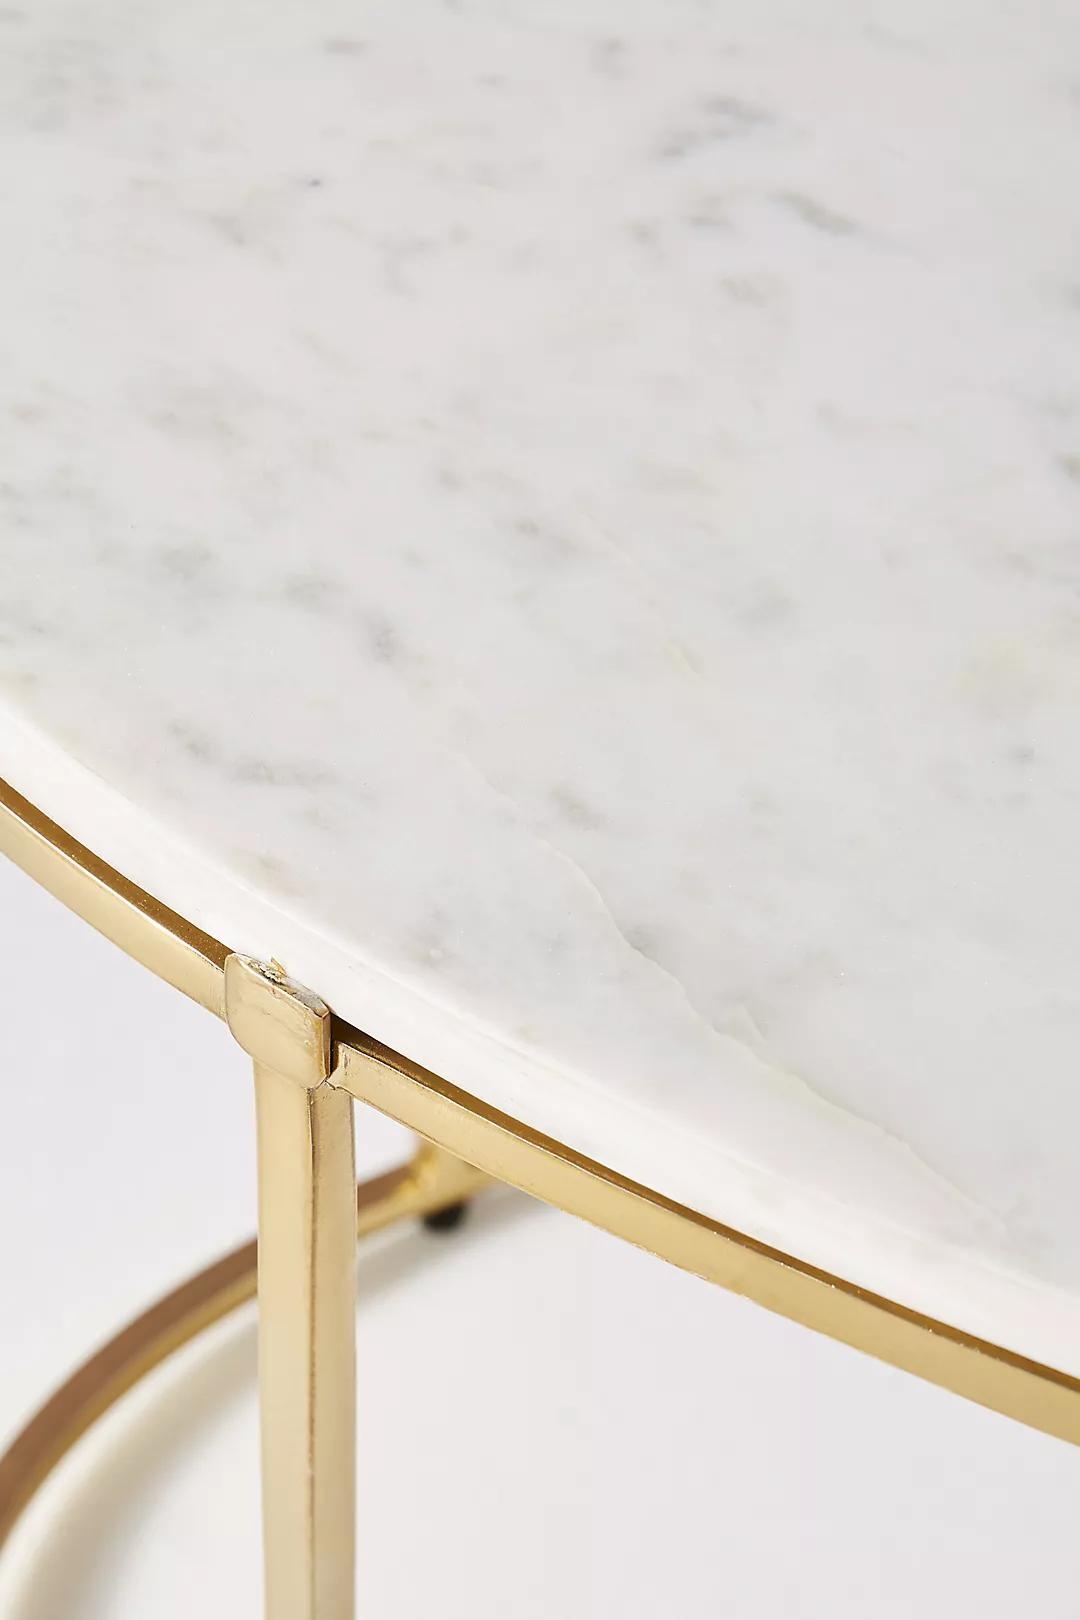 Leavenworth Oval Marble Coffee Table, 42" - Image 2